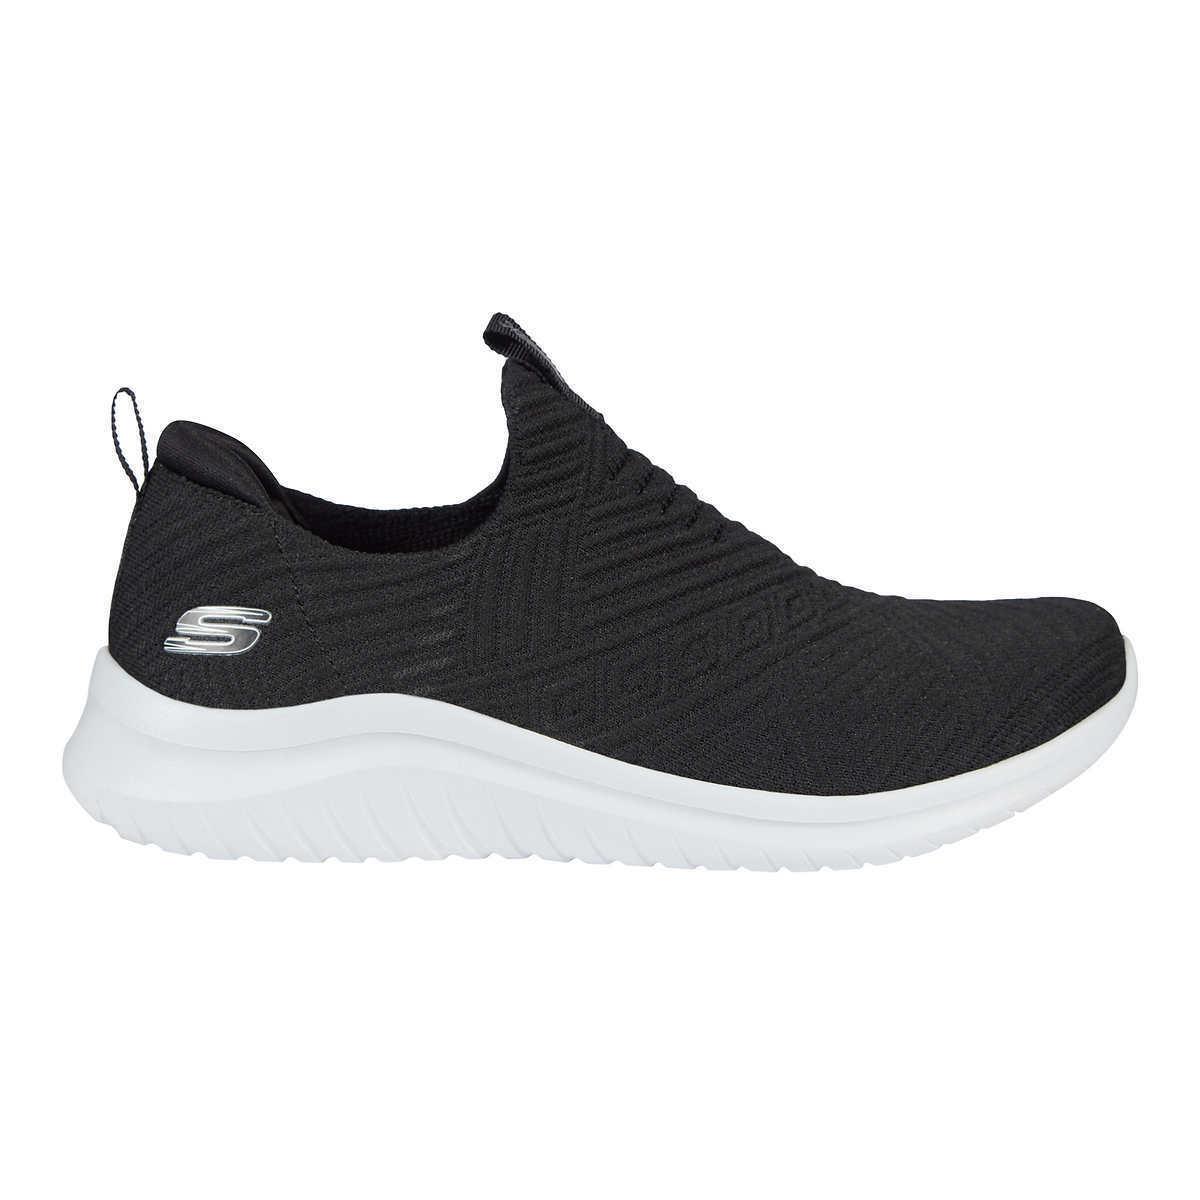 Skechers shoes Ultra Comfort 12